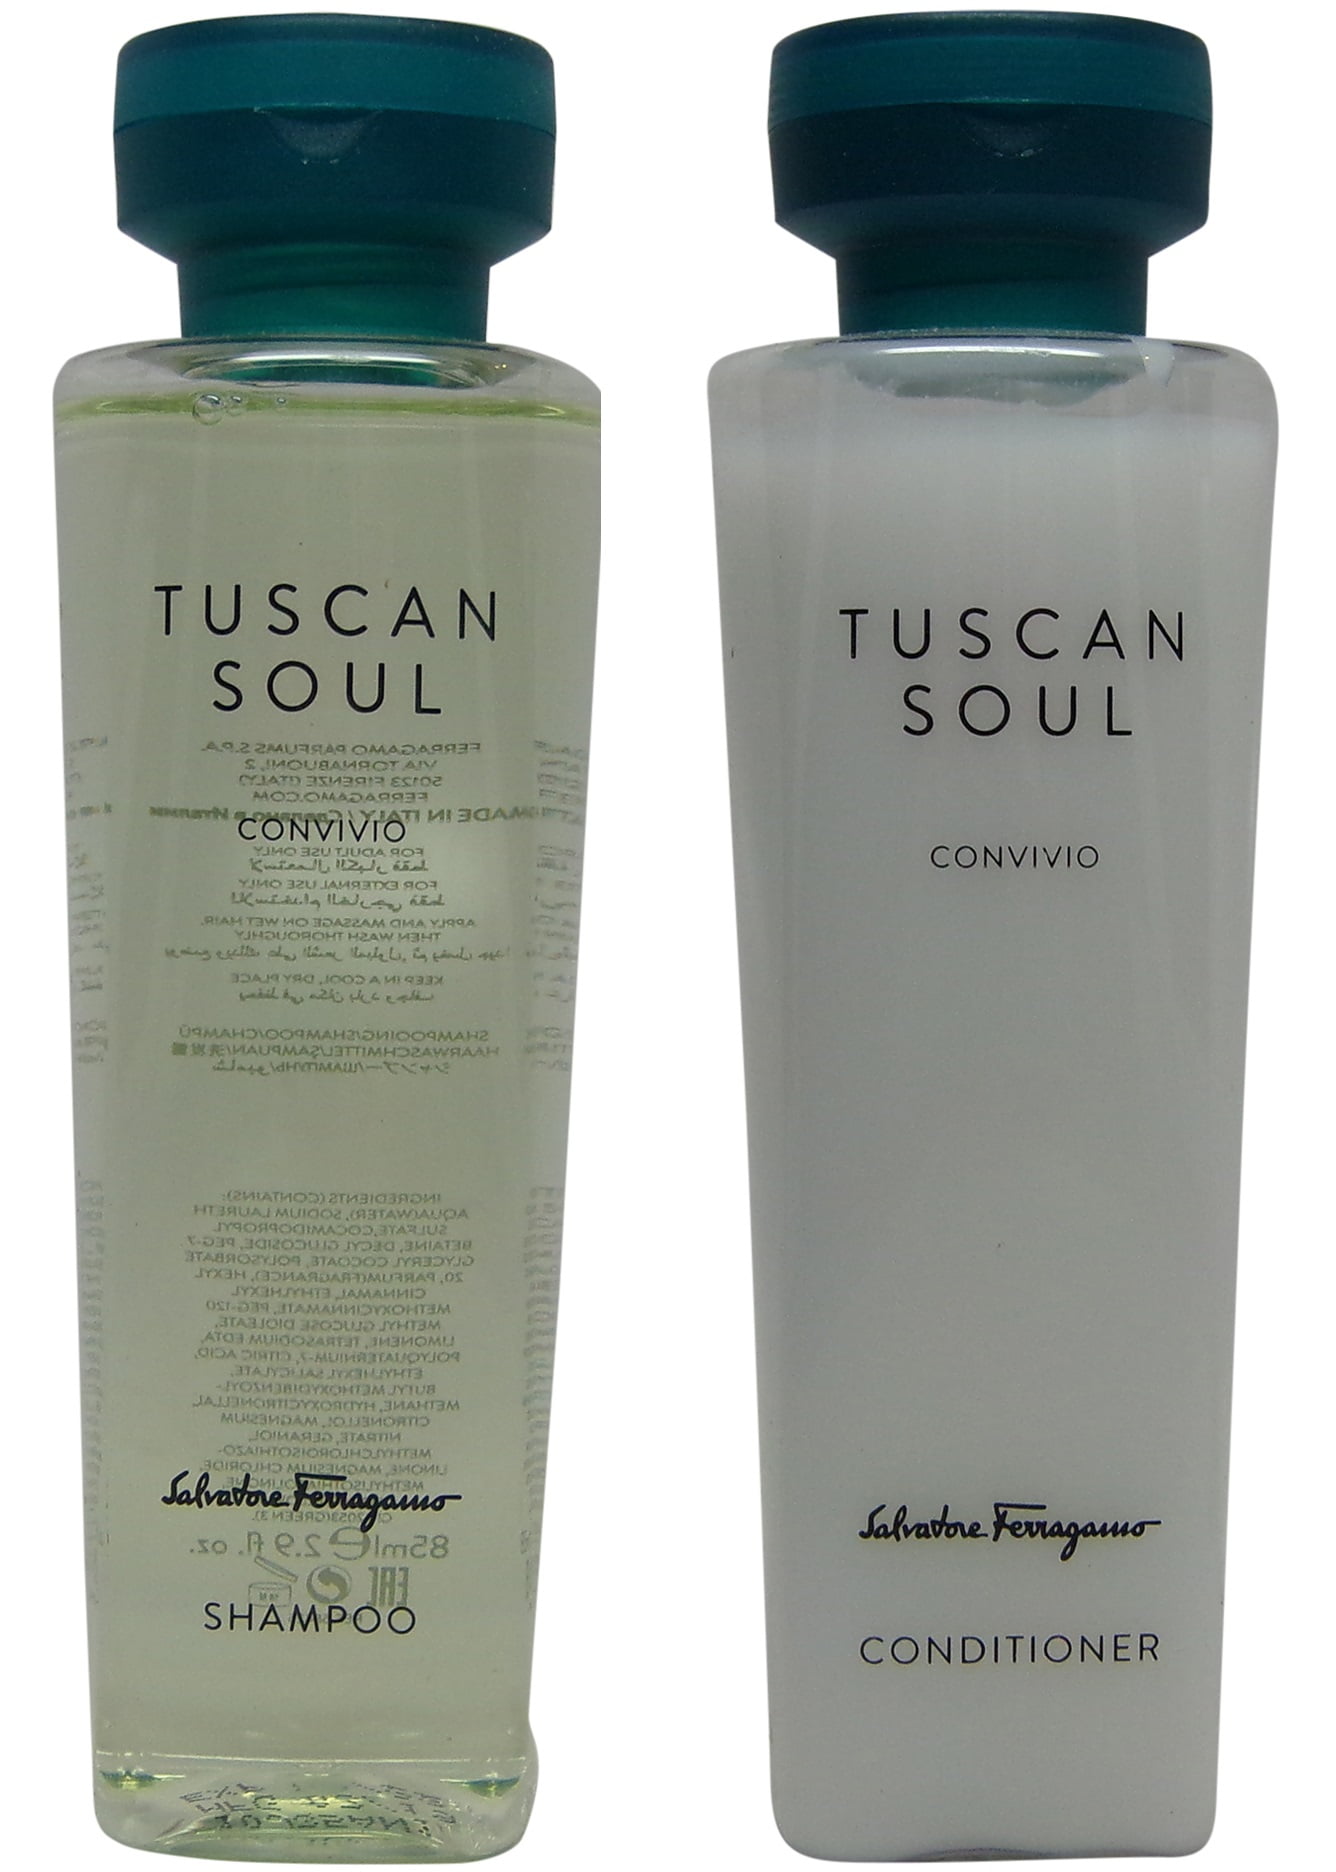 Salvatore Ferragamo Tuscan Soul Convivio Shampoo and Conditioner lot of